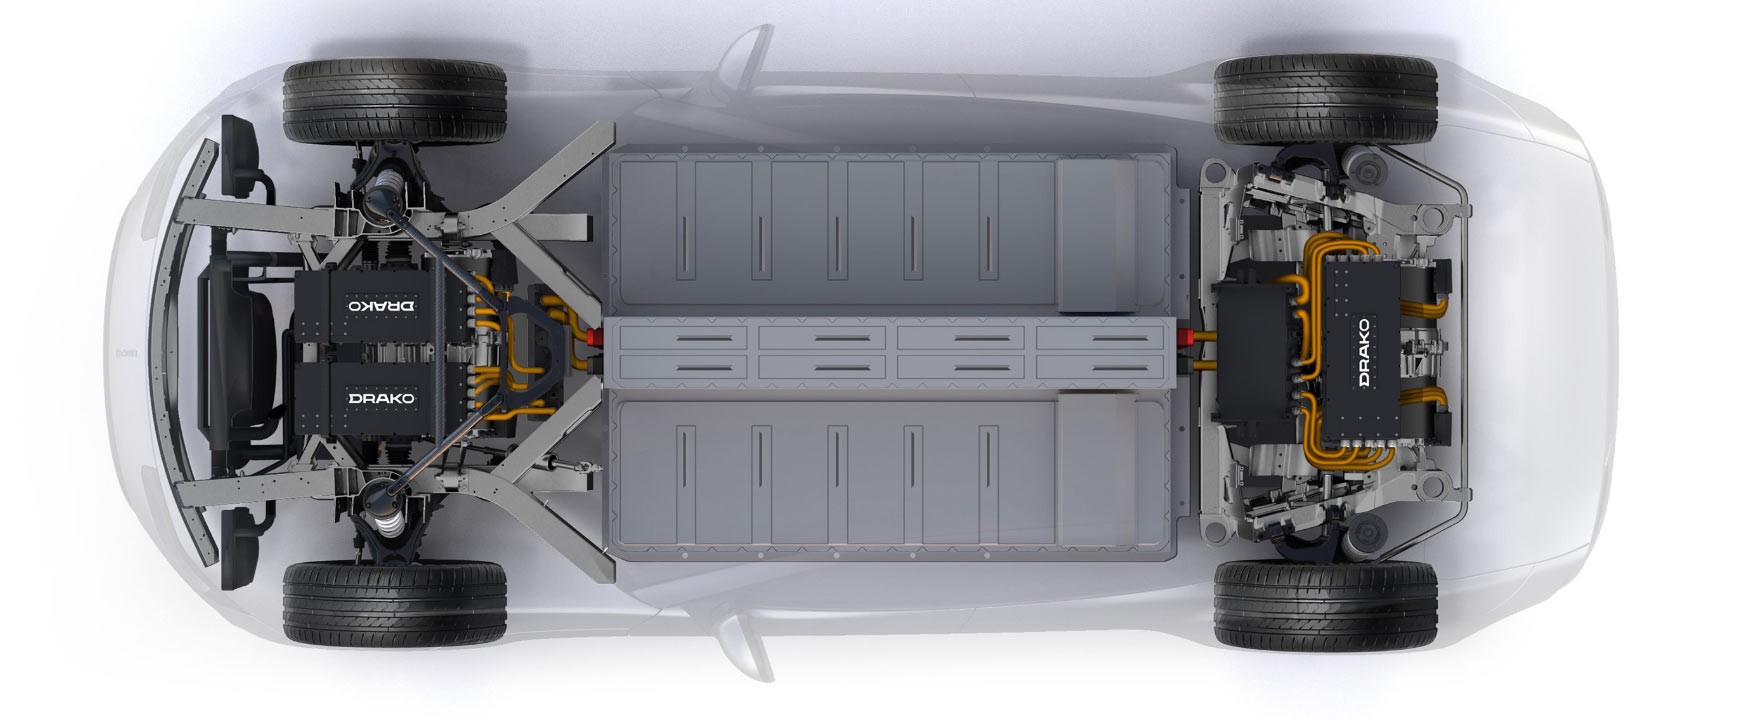 Drako GTE (2020): Quad Motor Architecture